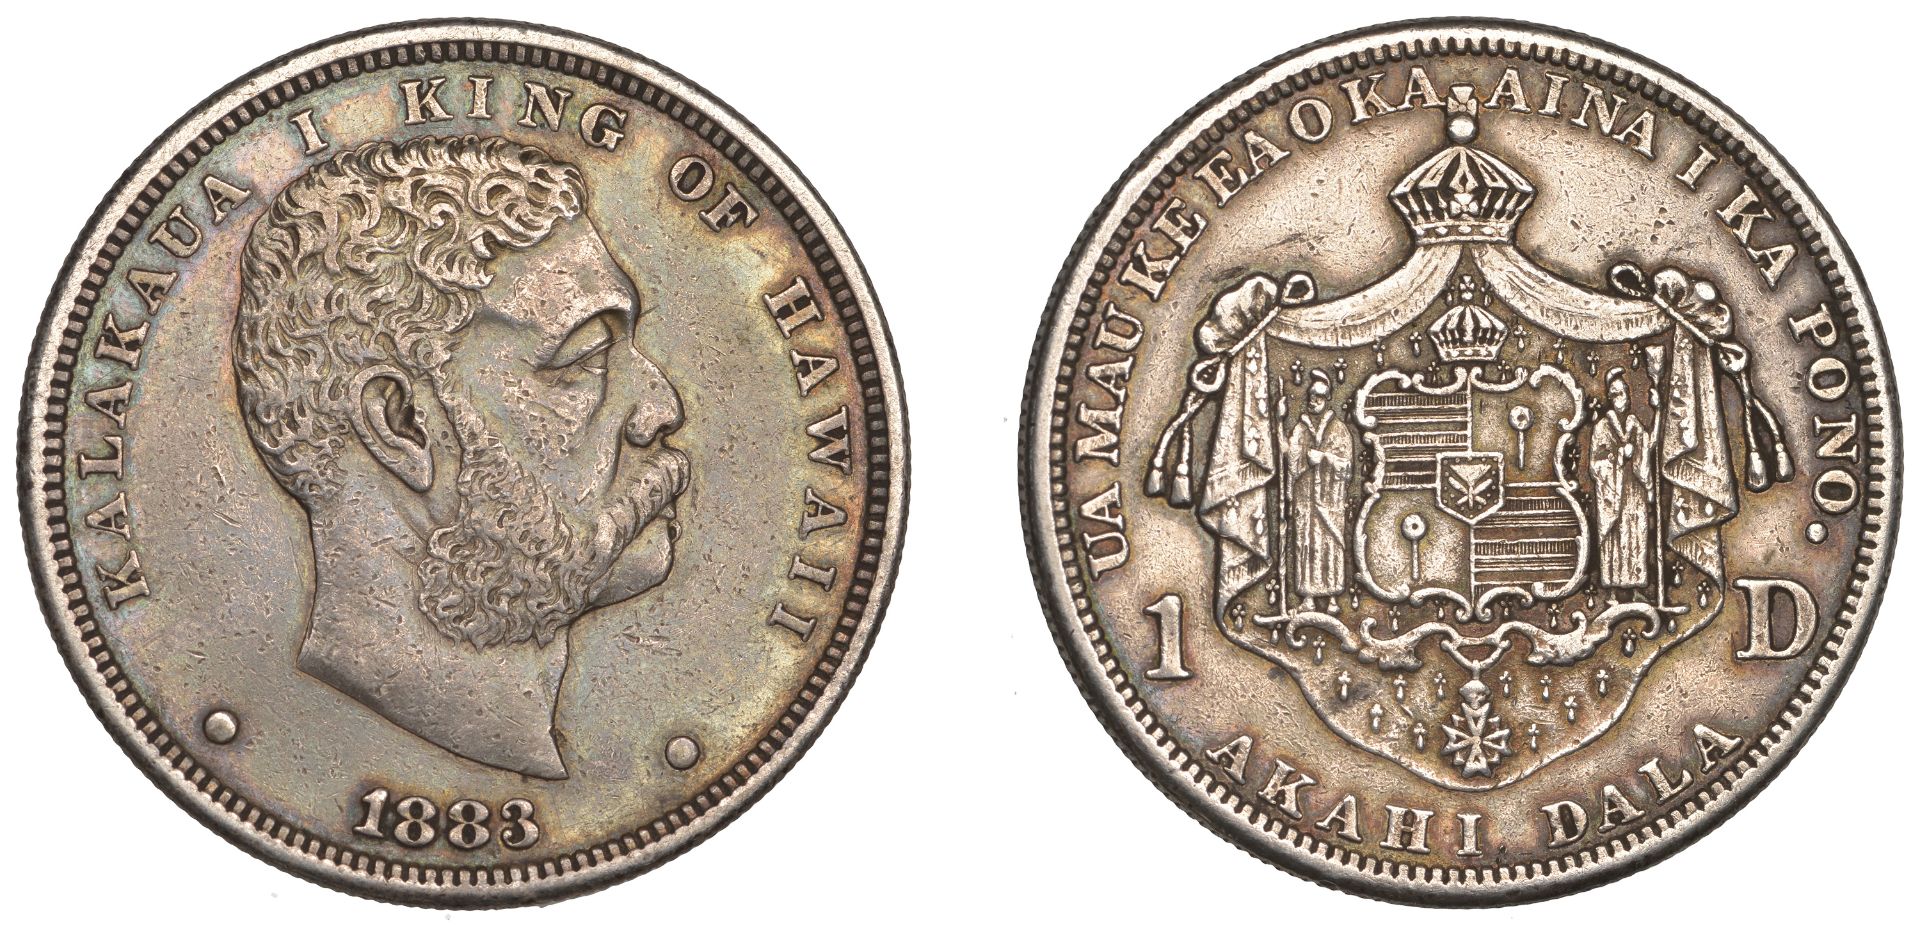 United States of America, HAWAII, Kalakaua I, Dollar, 1883. Minor surface marks, otherwise v...